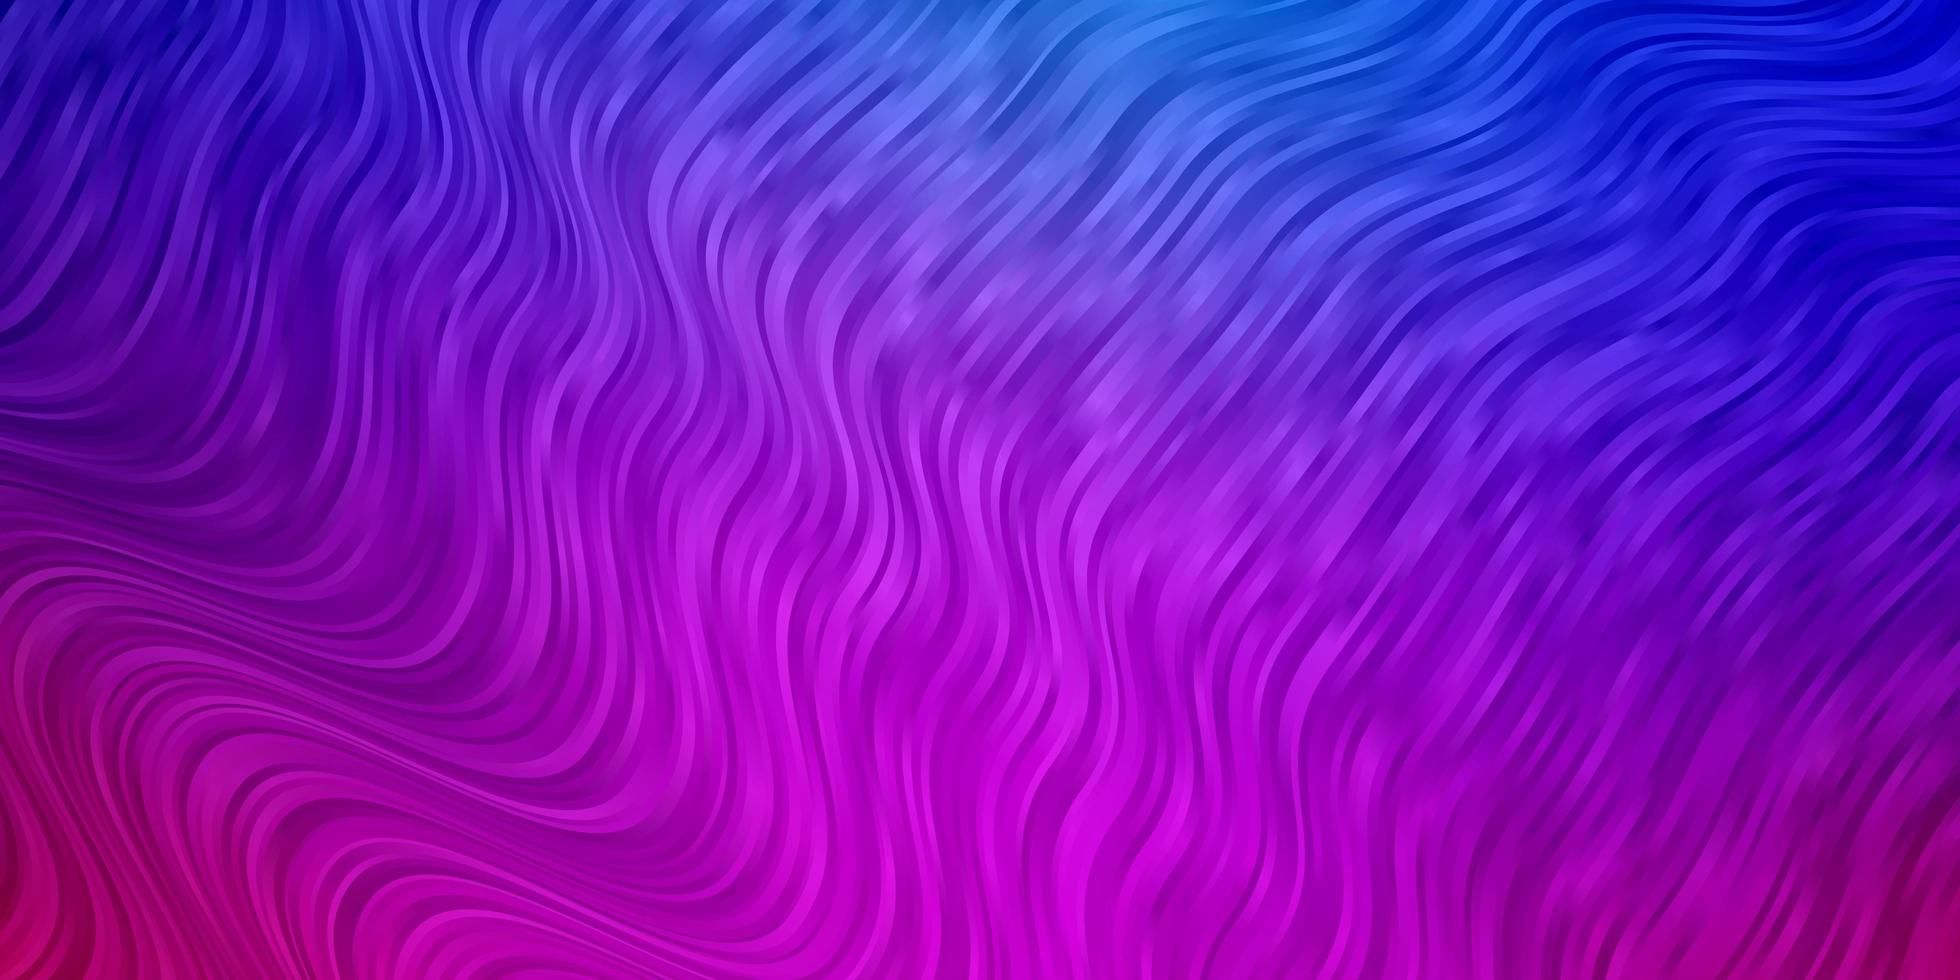 textura vector rosa claro, azul con líneas torcidas.